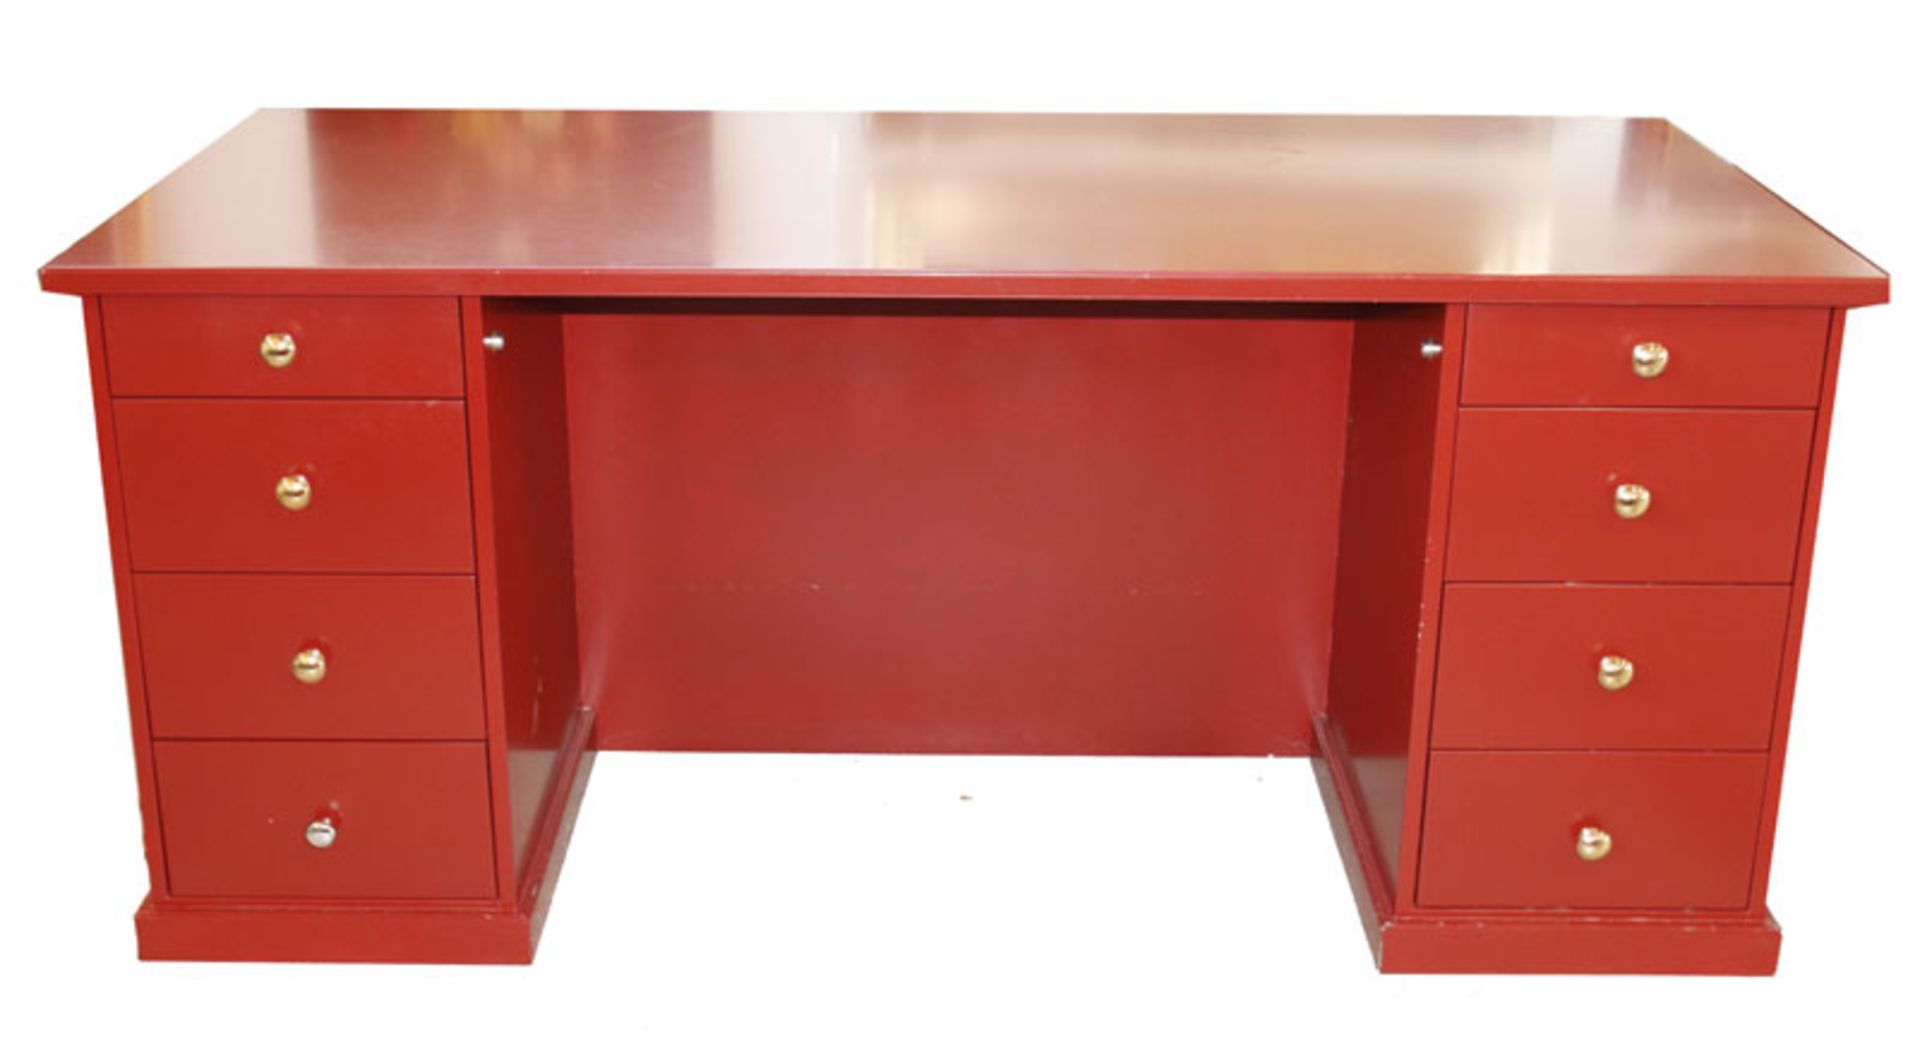 Moderner, roter Schreibtisch, Korpus mit 8 Schüben, H 79 cm, B 180 cm, T 80 cm, Gebrauchsspuren